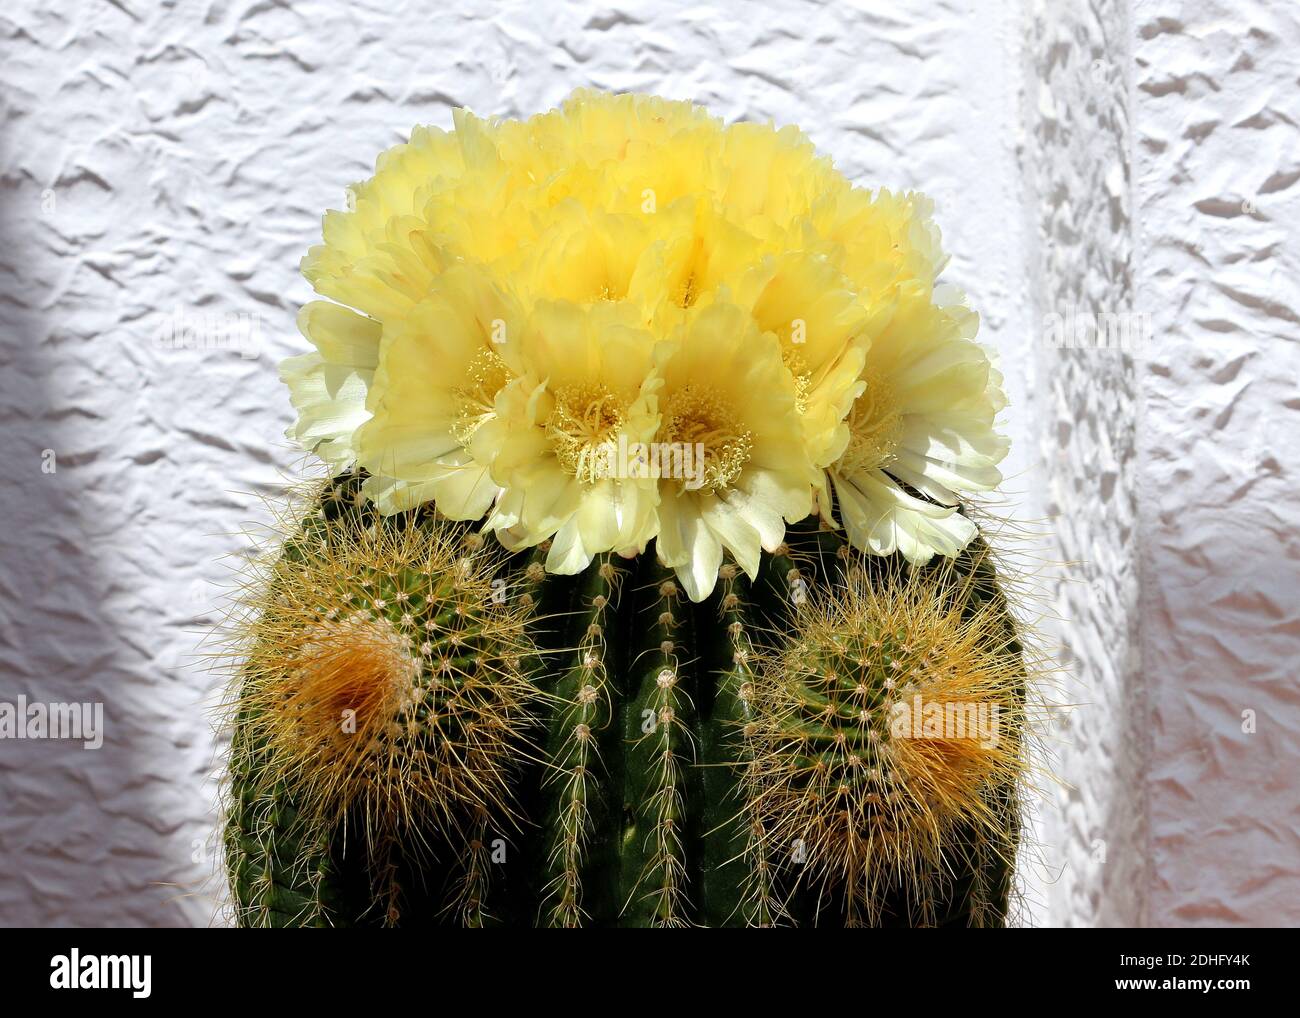 Ein Faßkaktus (Echinocactus) in Blüte. Dieser hat Blumen und zwei Protuberanzen, die als Welpen bezeichnet werden. Aus dem Südwesten von Amerika und lebt 50 Jahre+. Stockfoto